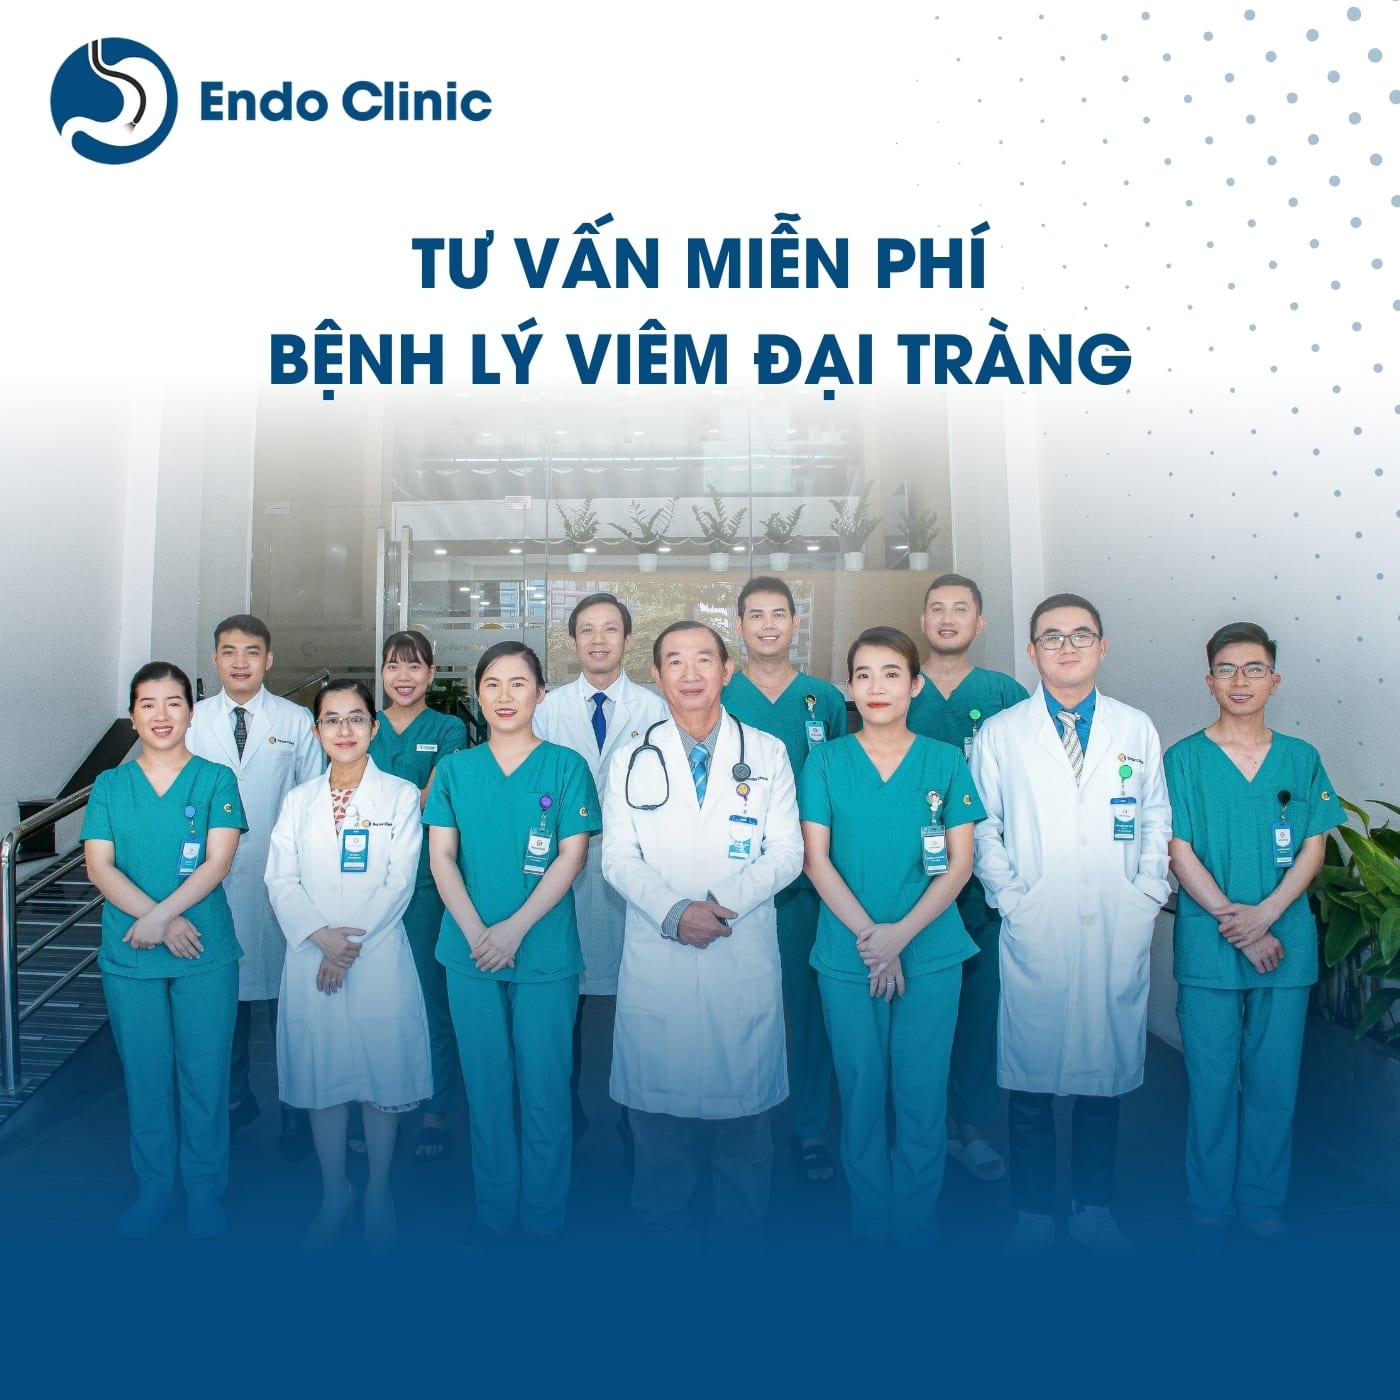 Tư vấn miễn phí bệnh viêm đại tràng Endo Clinic